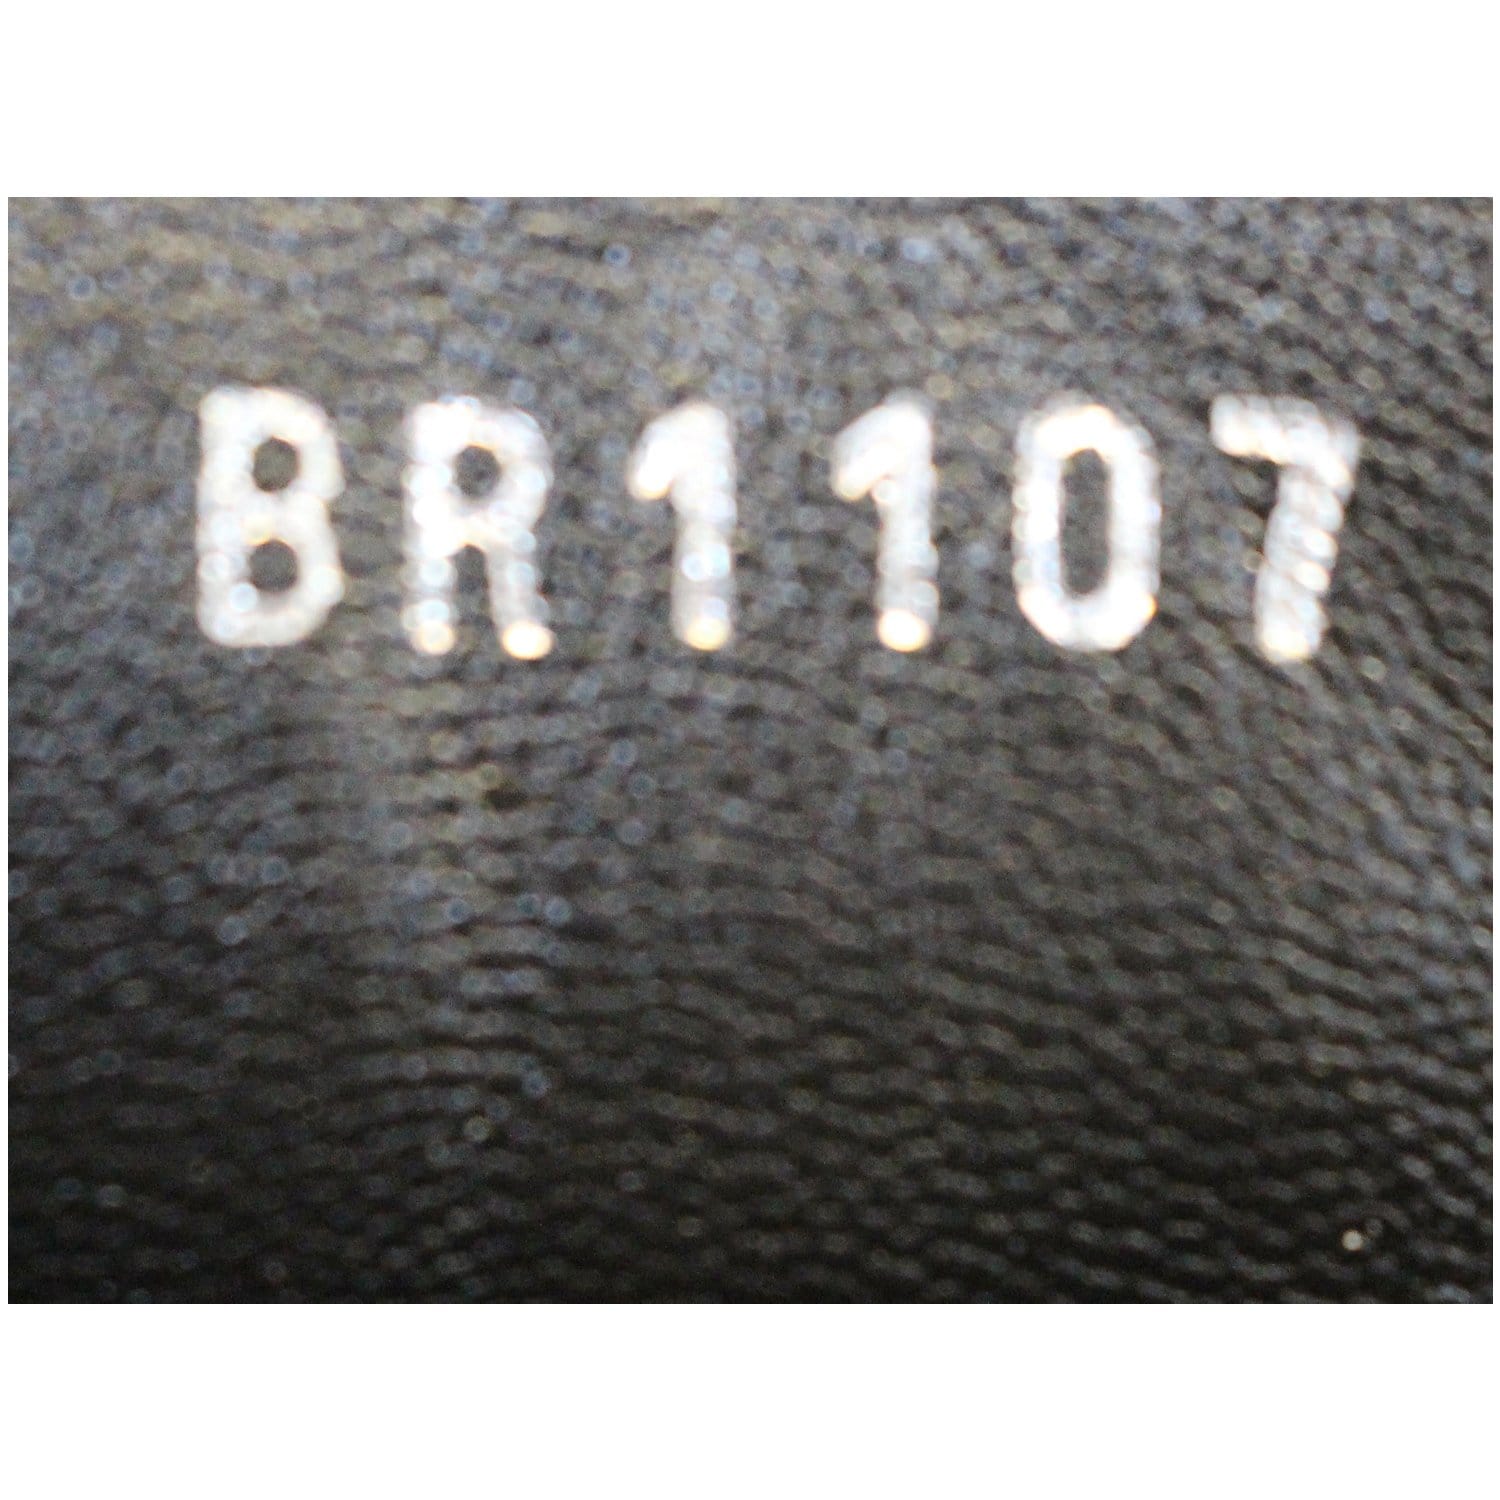 LOUIS VUITTON Calfskin Monogram Fireball Ankle Boots 39 Black 375988